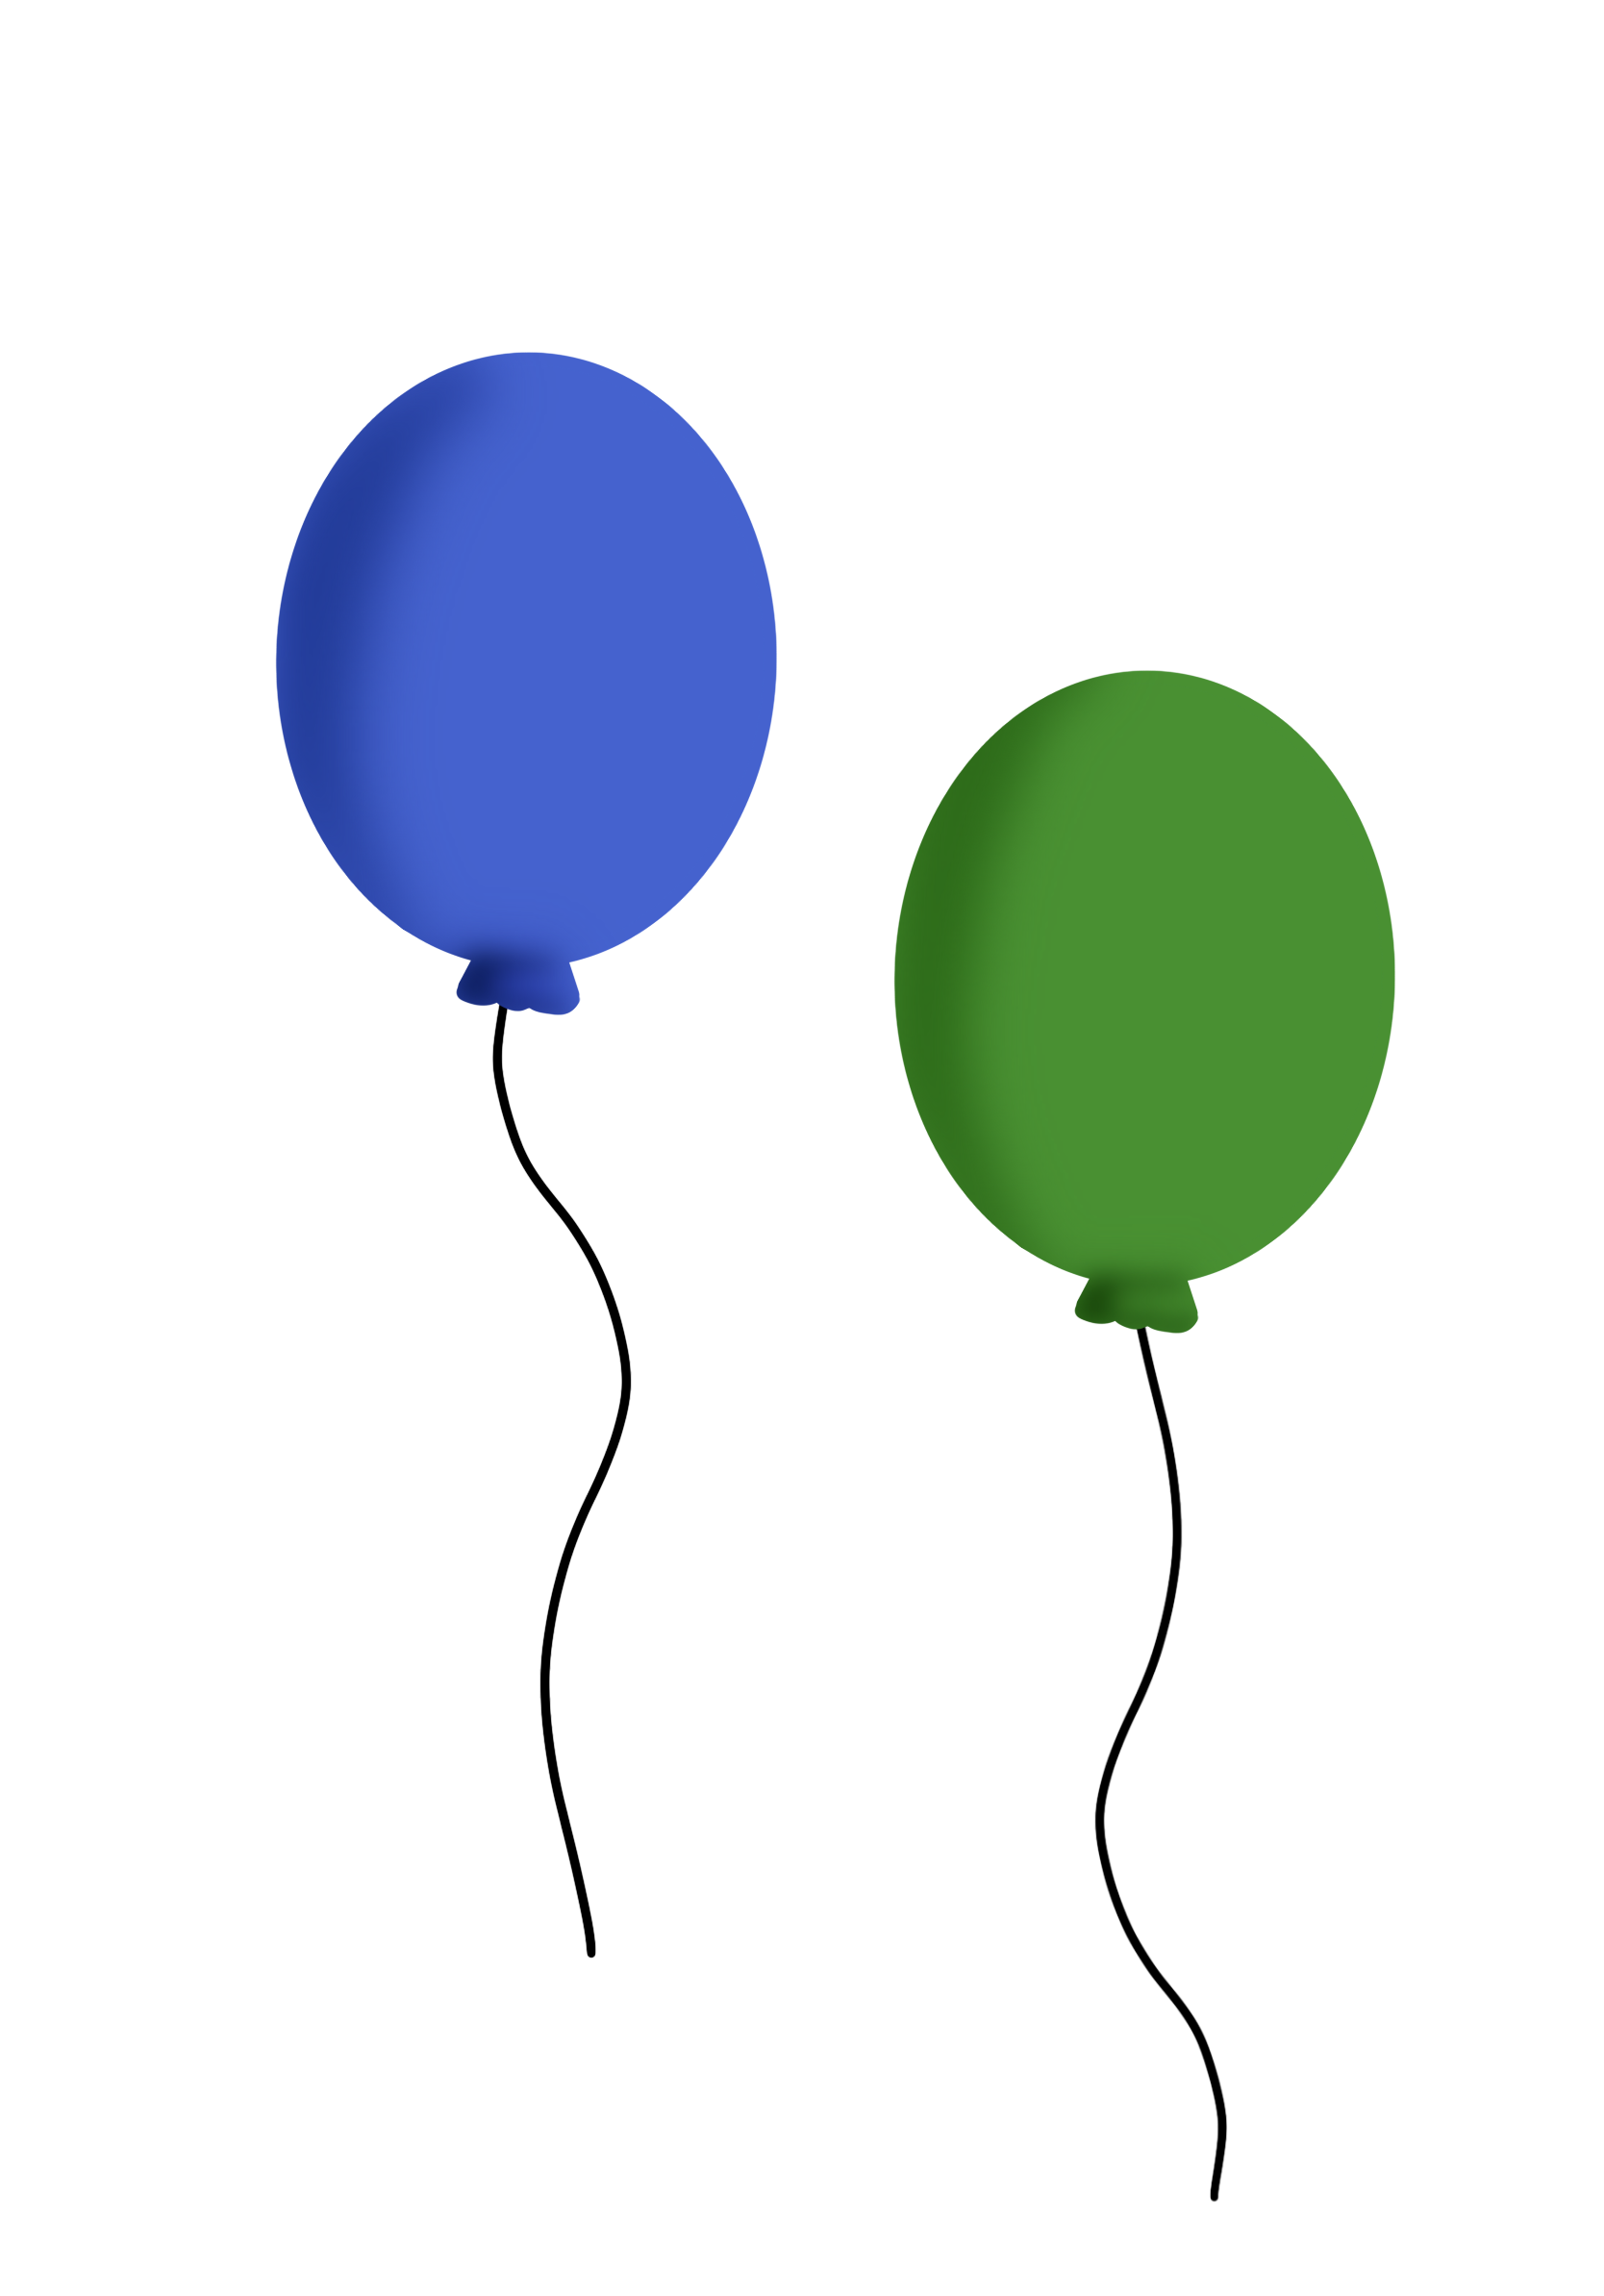 Beide Ballons